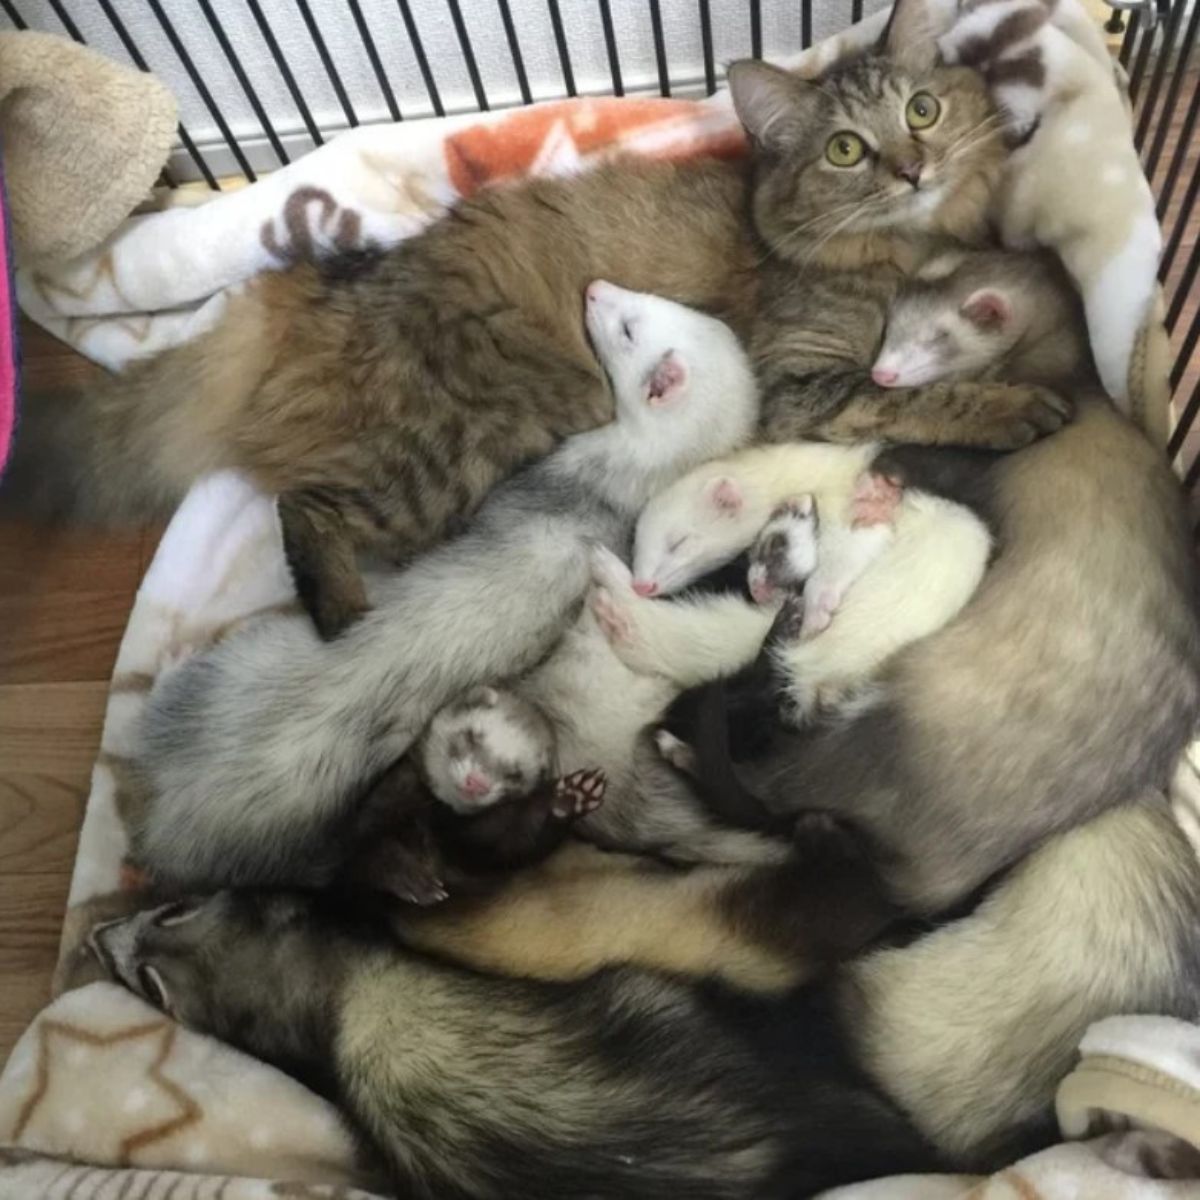 ferrets asleep next to a kitten